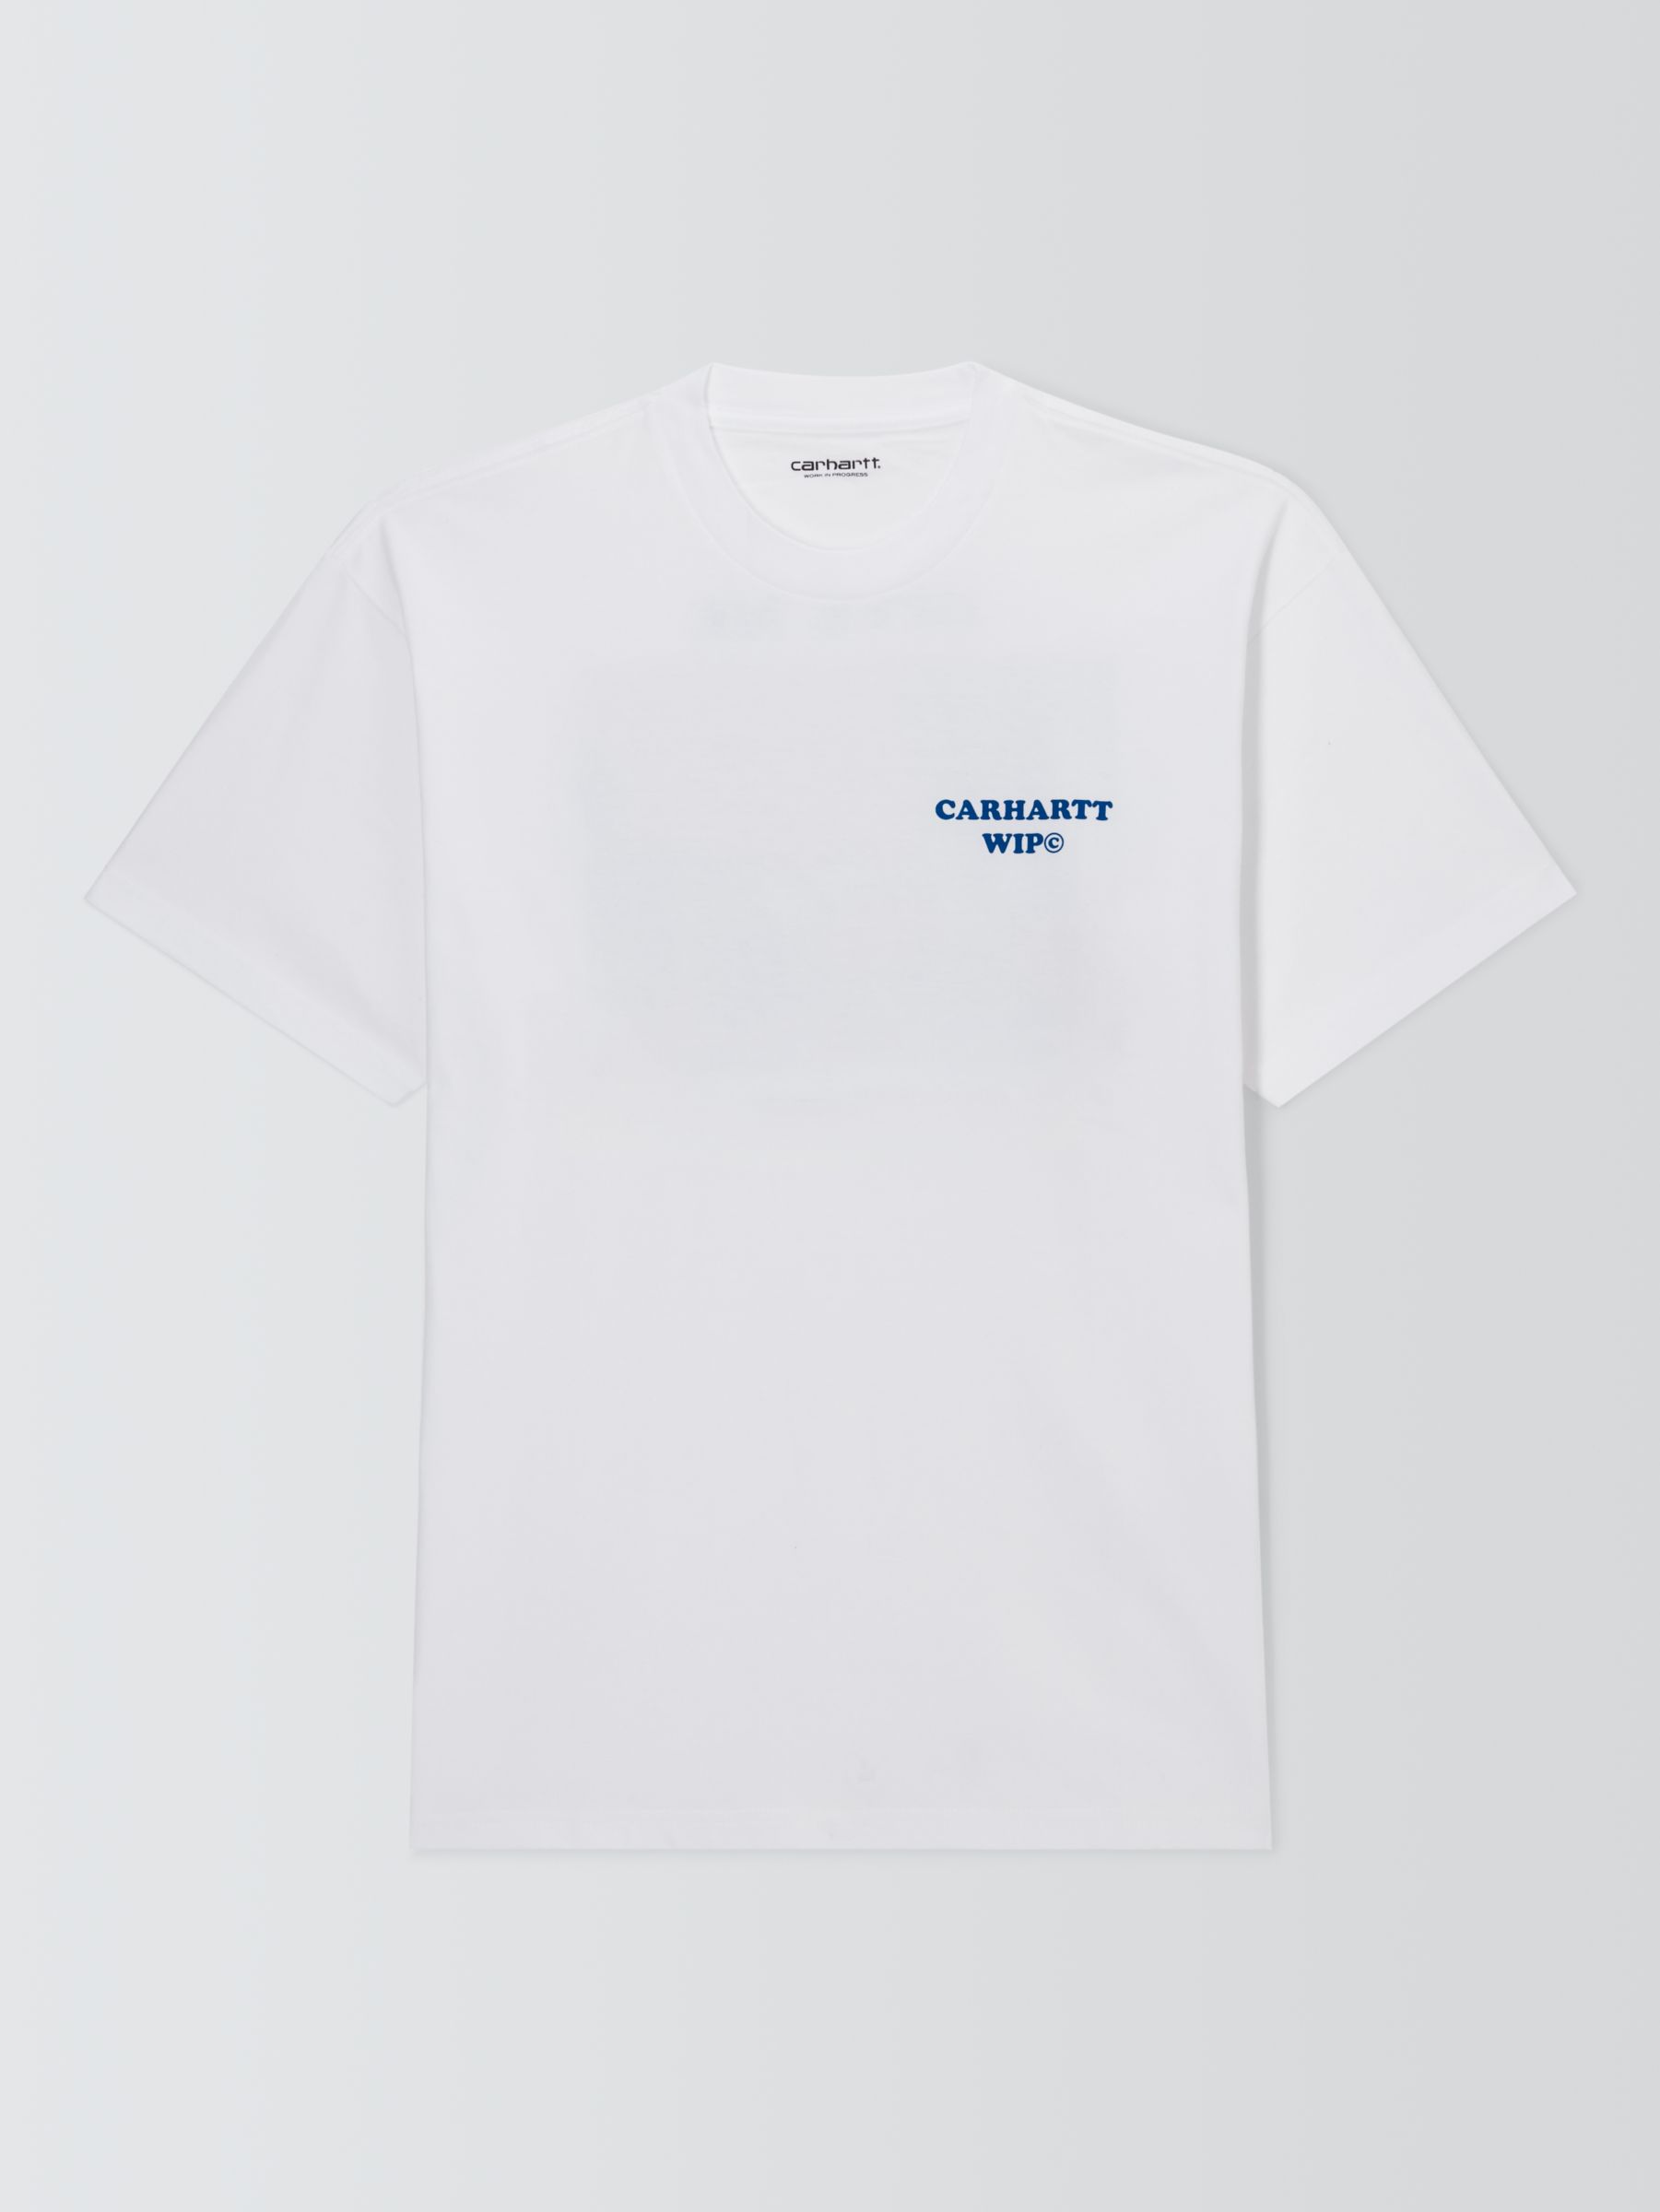 Carhartt WIP Short Sleeve IM Dinner T-Shirt, White, M